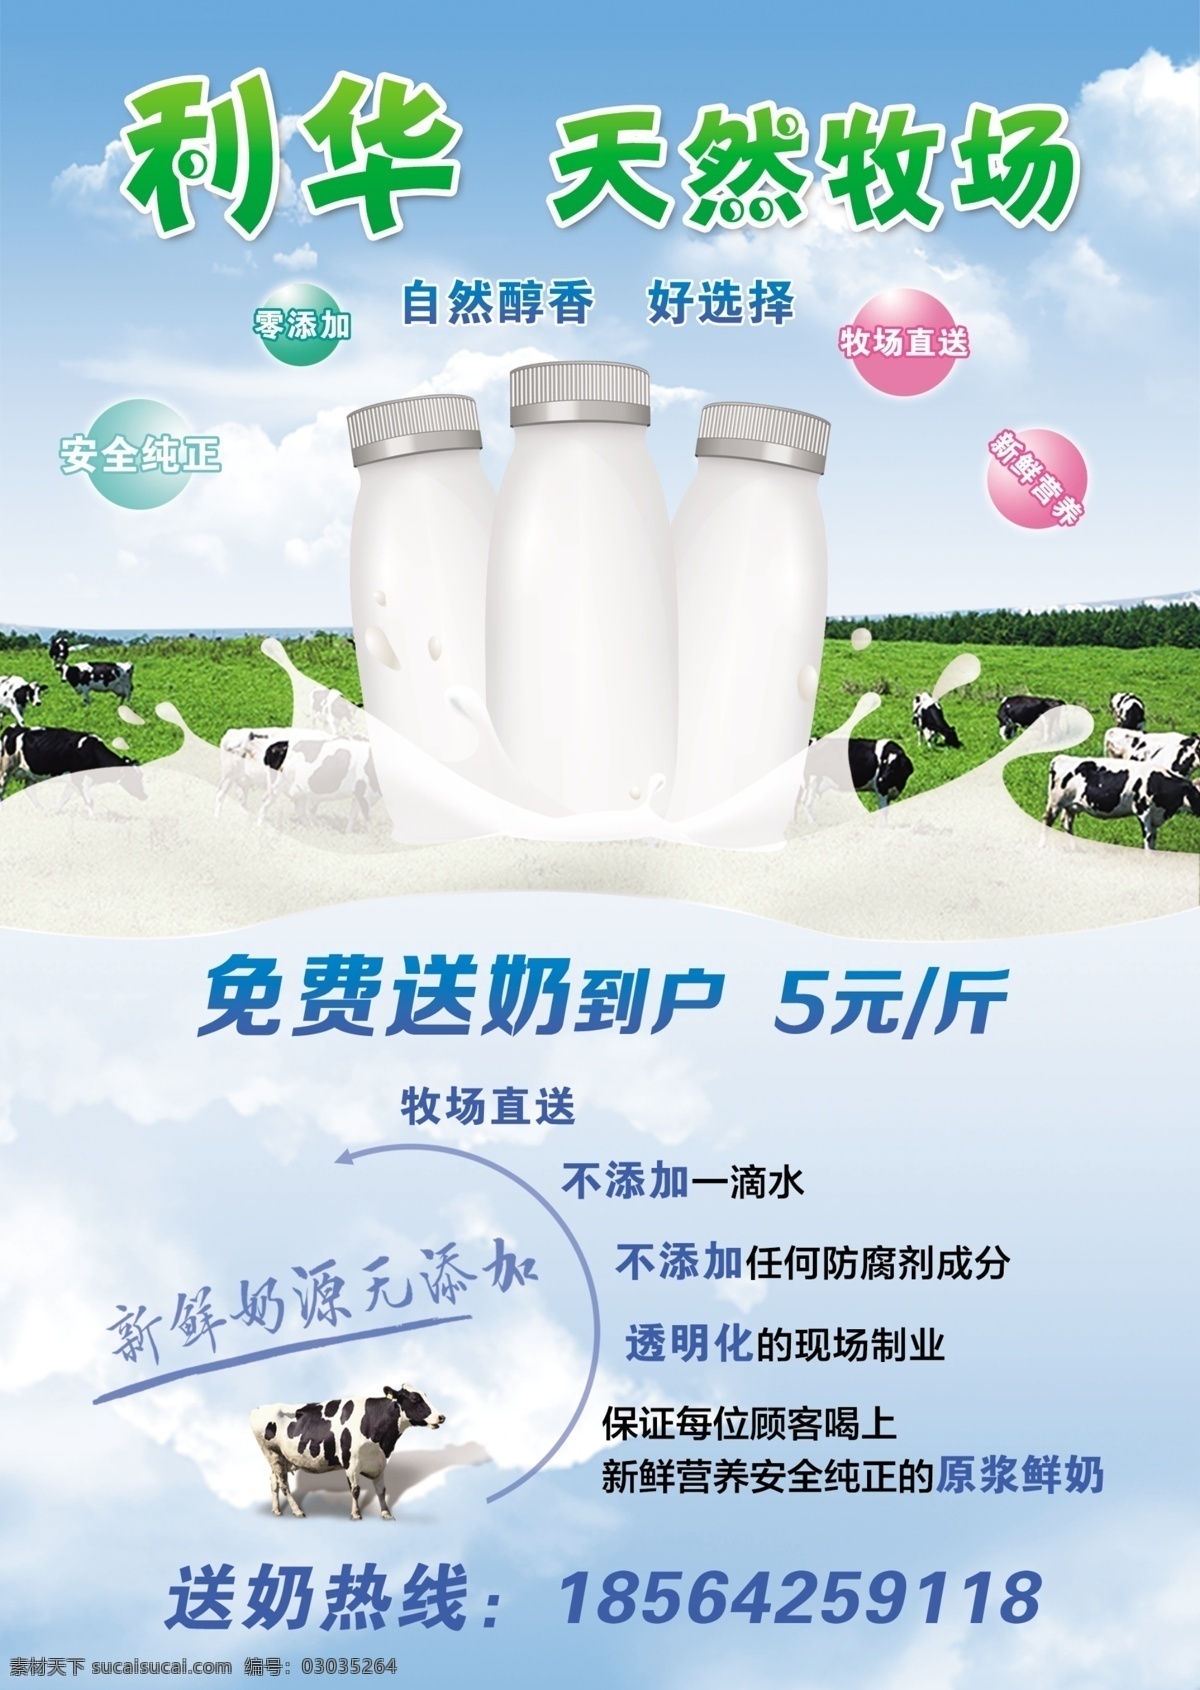 鲜奶 配送 宣传单 牧场 奶牛 蓝天背景 牧场直送 安全纯净 无污染 零添加 原浆鲜奶 分层